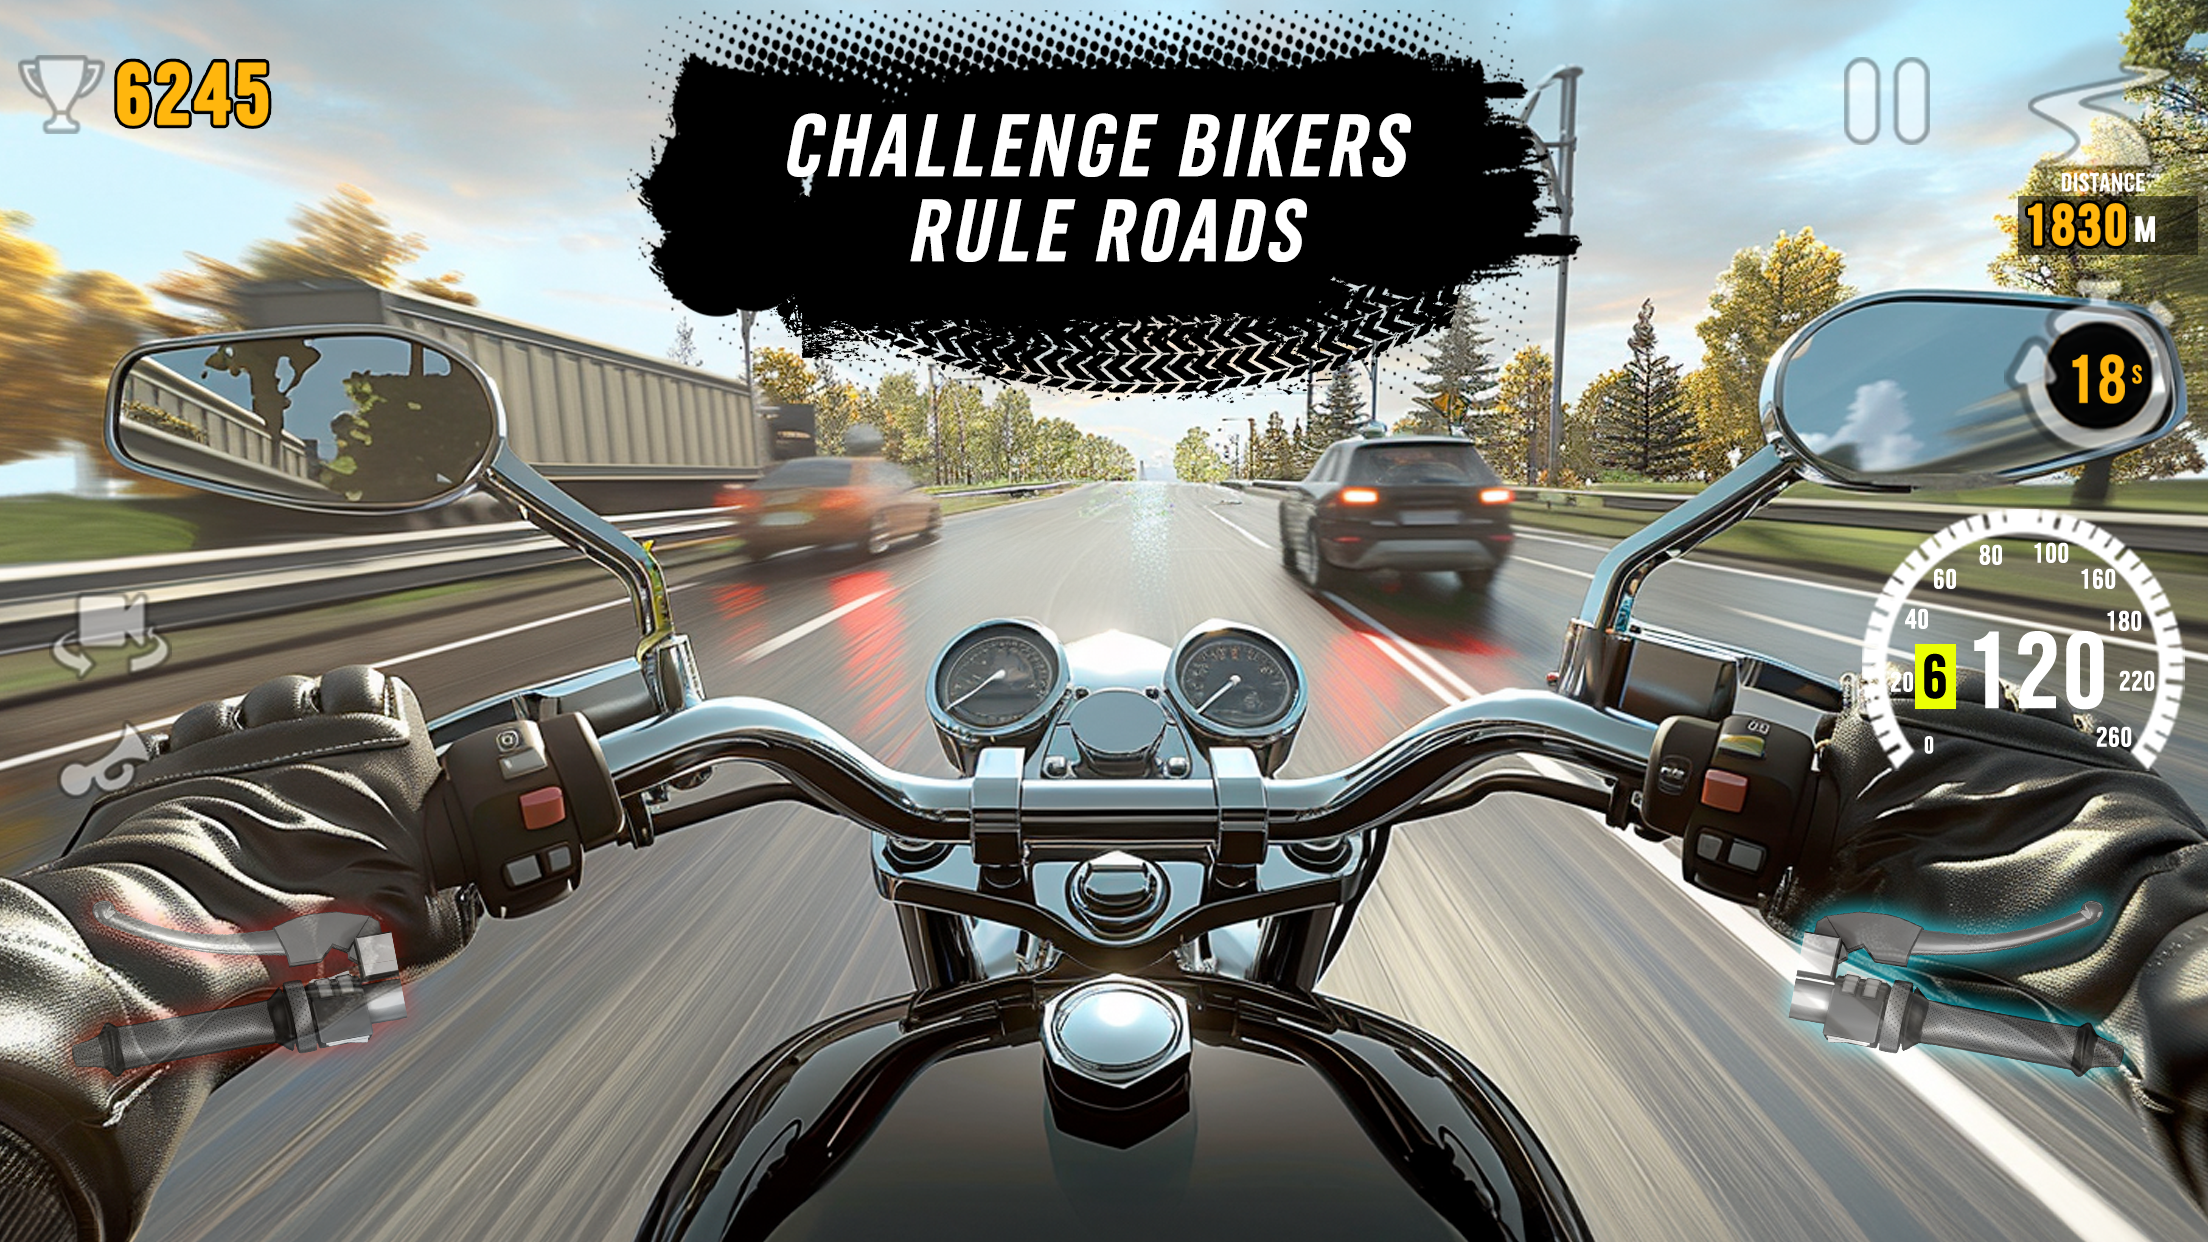 Motor Tour: Biker's Challengeのキャプチャ